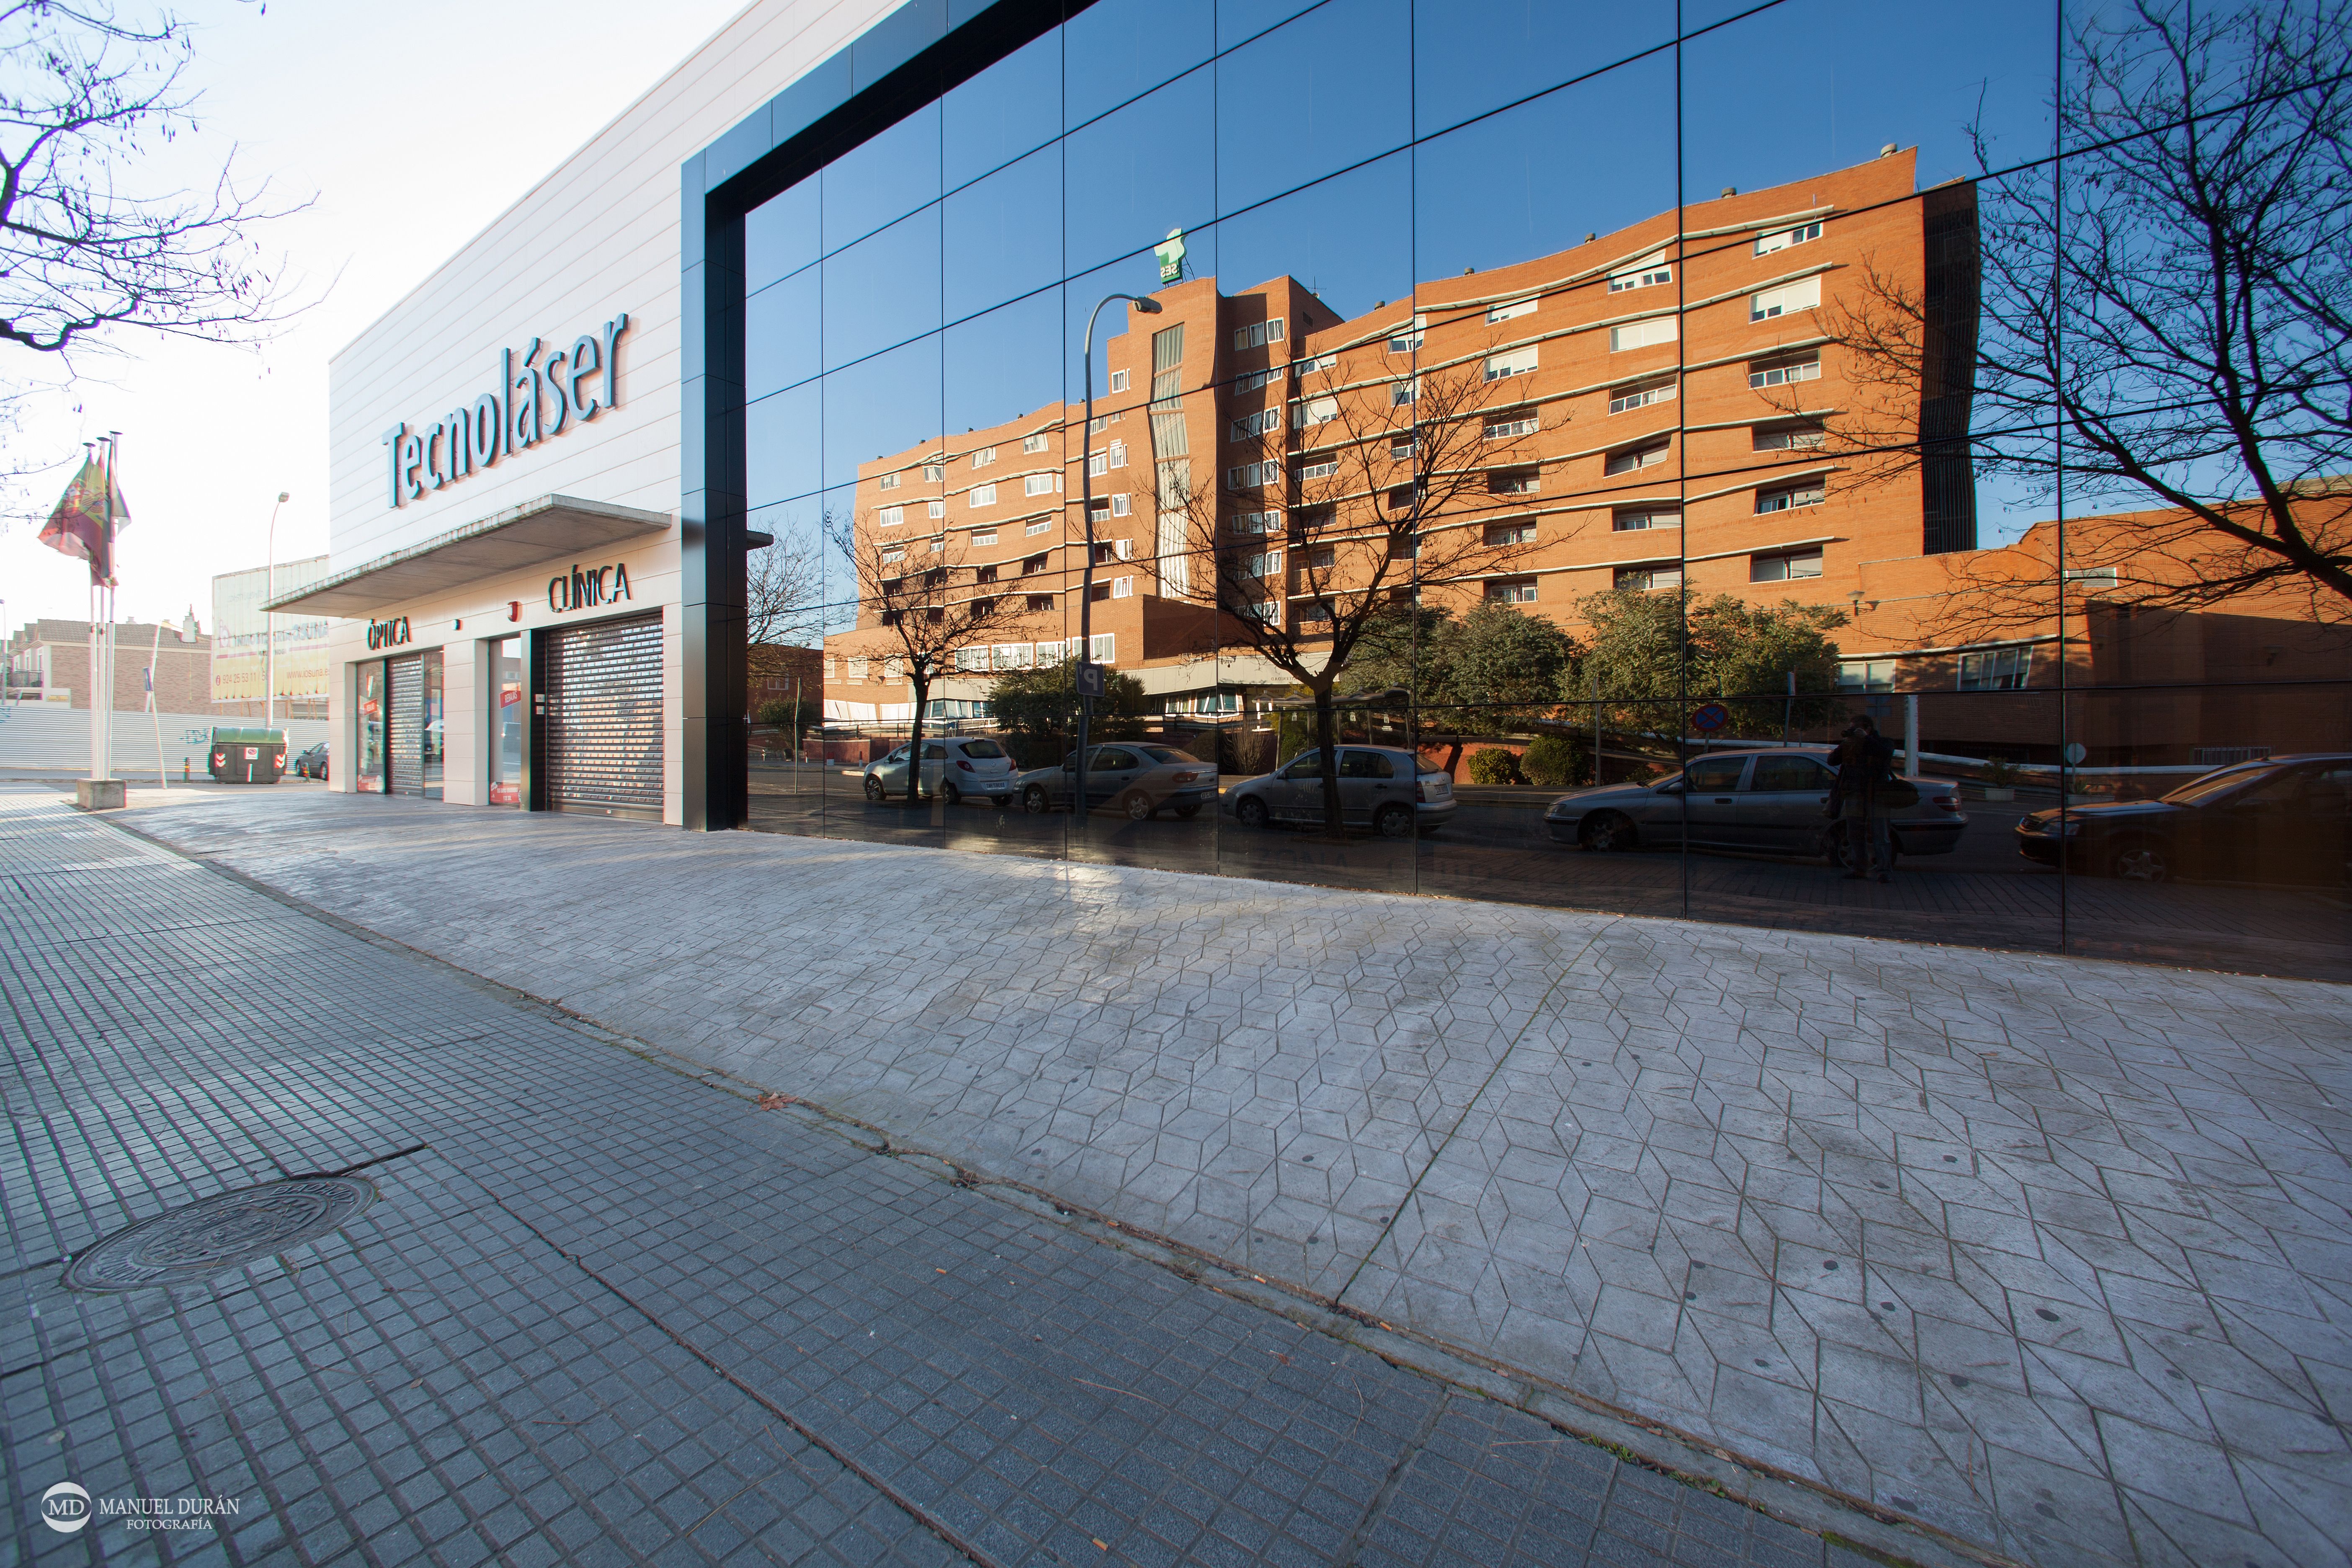 Edificio tecnolaser en Badajoz